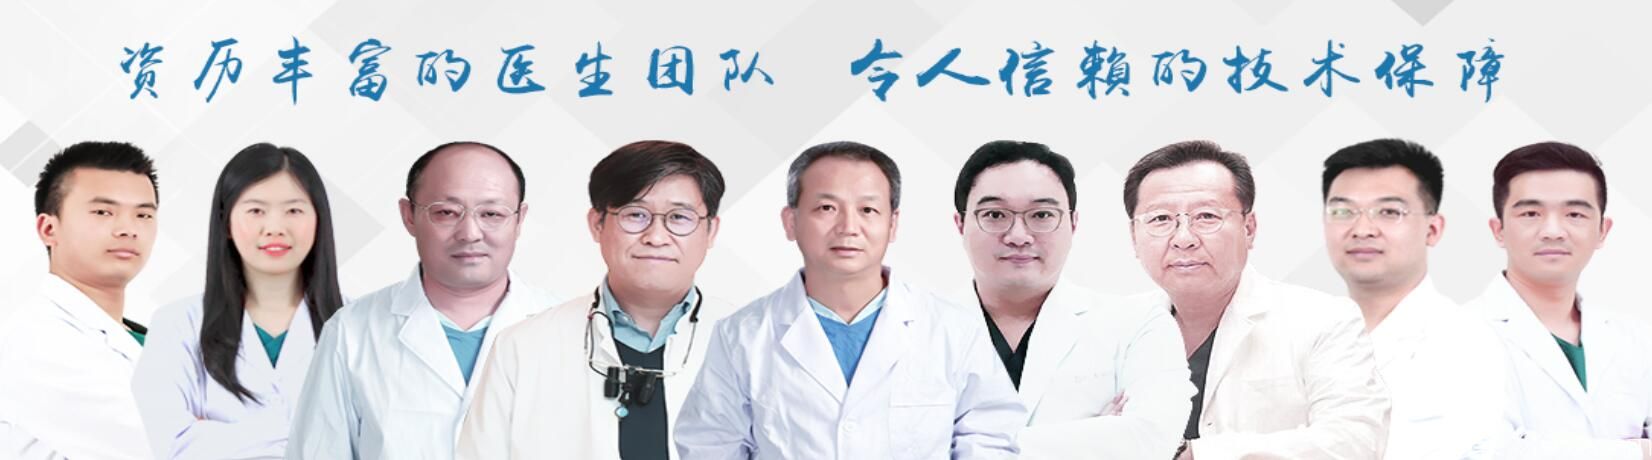 上海雅圣口腔医生团队介绍